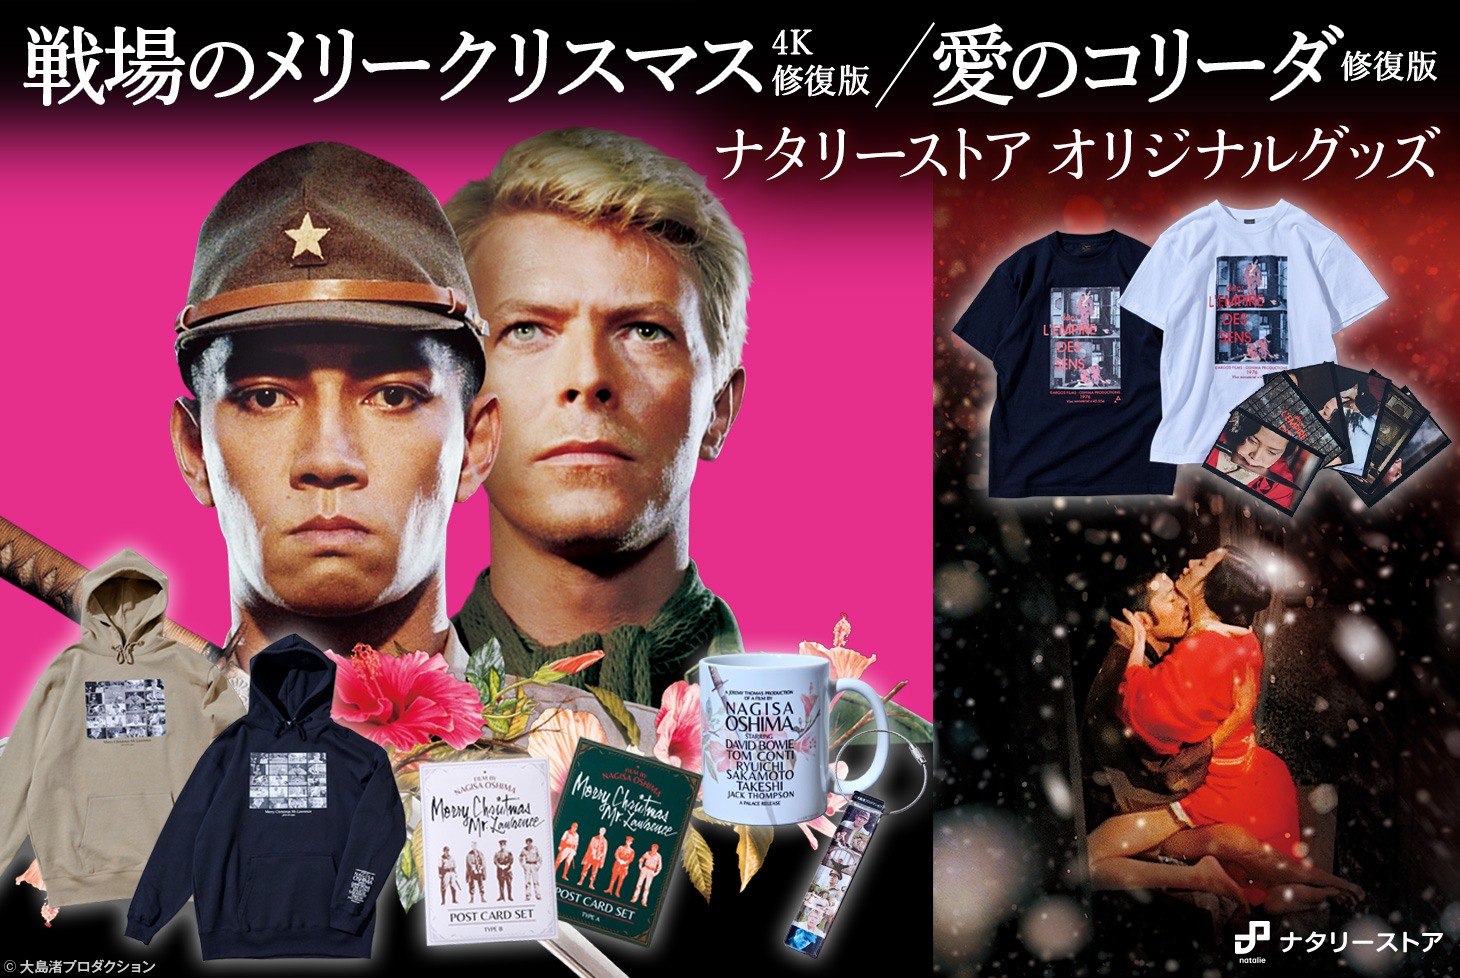 大島渚監督作品 戦場のメリークリスマス 愛のコリーダ 劇場 イベント販売のお知らせ